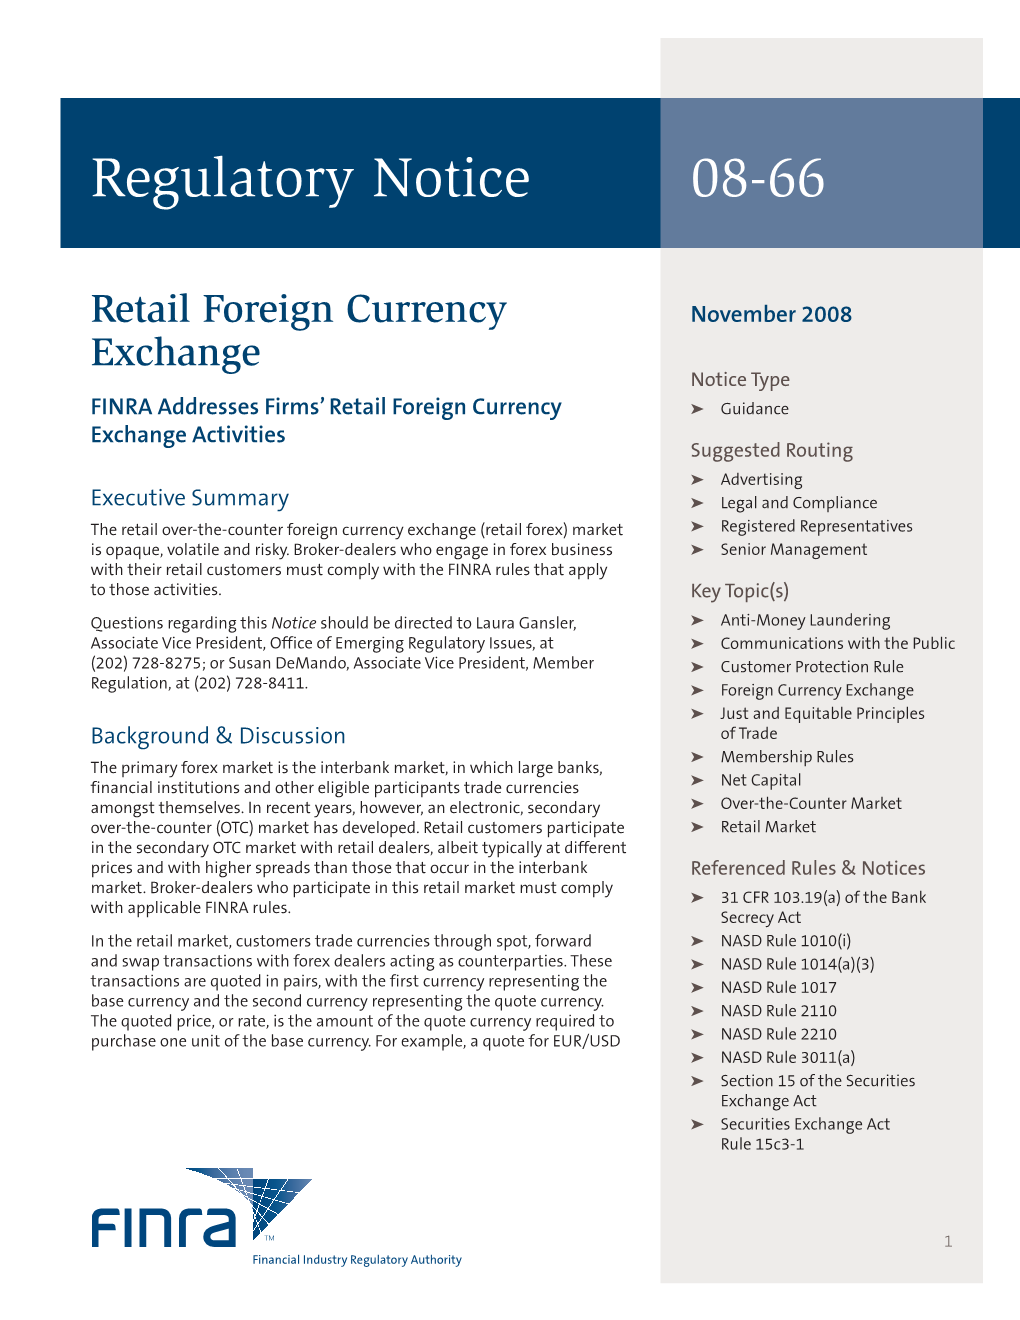 Regulatory Notice 08-66